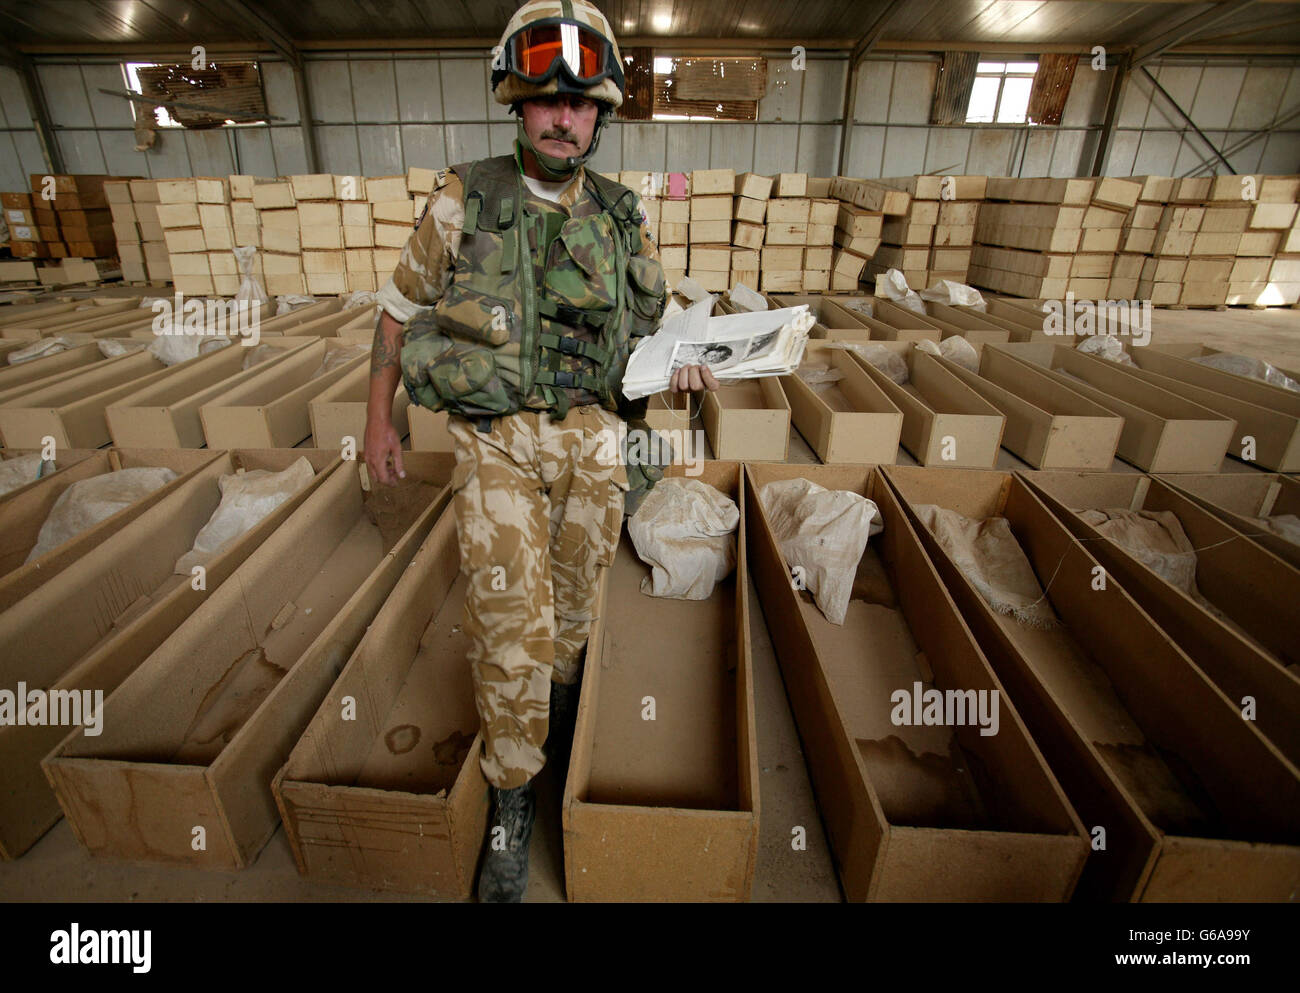 Un soldat tient un livre montrant les corps morts de ce que l'on croit être des Irakiens, découverts avec des restes humains et des cercueils dans une base irakienne abandonnée près de Bassora. Des centaines de restes humains ont été découverts dans une morgue de fortune par des soldats britanniques dans le sud de l'Irak. DaN Chung / Guardian / MOD Pool. *... Les crânes, paquets d'os en bandes d'uniforme militaire, ont été jetés dans des sacs en plastique et des cercueils non scellés dans une base militaire irakienne abandonnée à la périphérie d'Al Zubayr. Il était impossible de dire combien de temps les restes étaient là, mais la triste découverte sera maintenant Banque D'Images